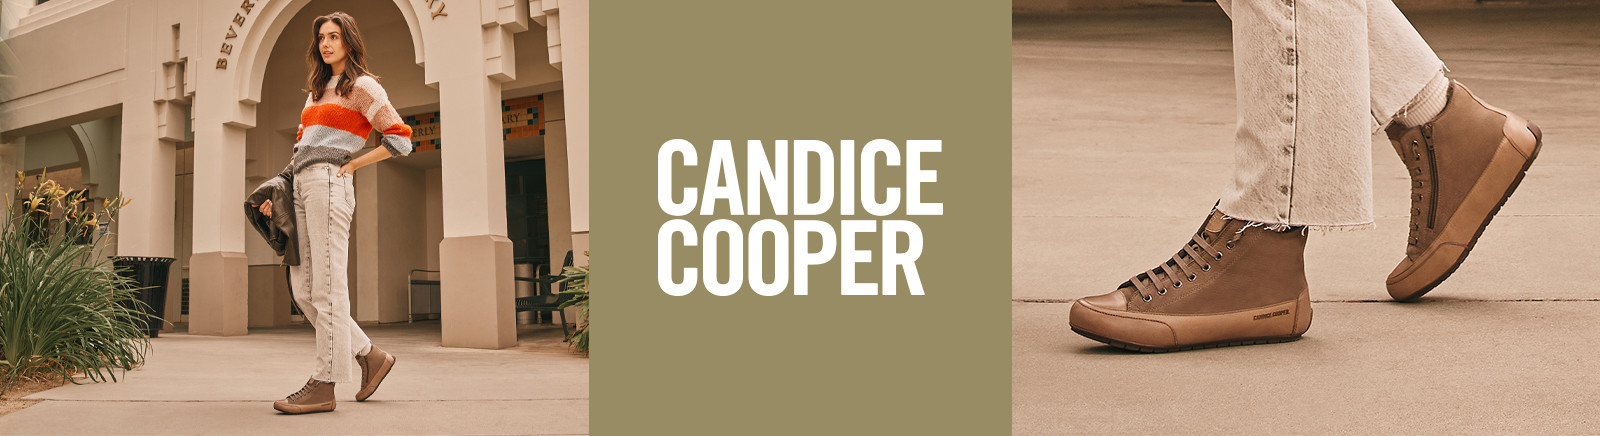 Prange: Candice Cooper Sneaker für Damen kaufen online shoppen